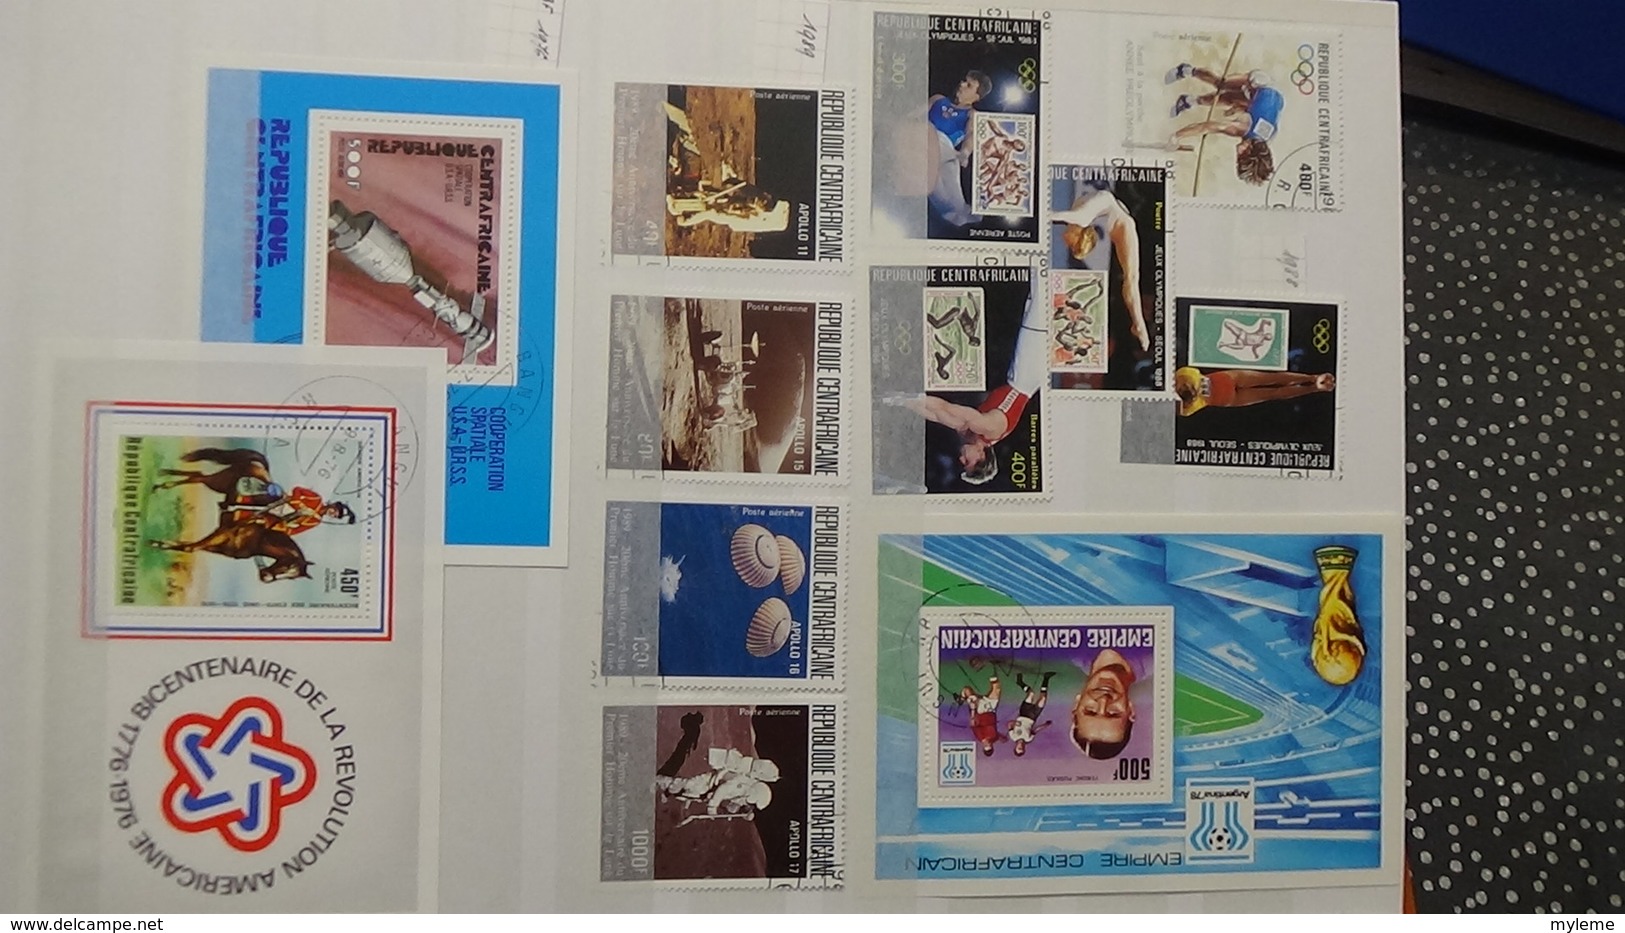 B382 Collection timbres et blocs oblitérés de divers pays d'Afrique. A saisir !!!